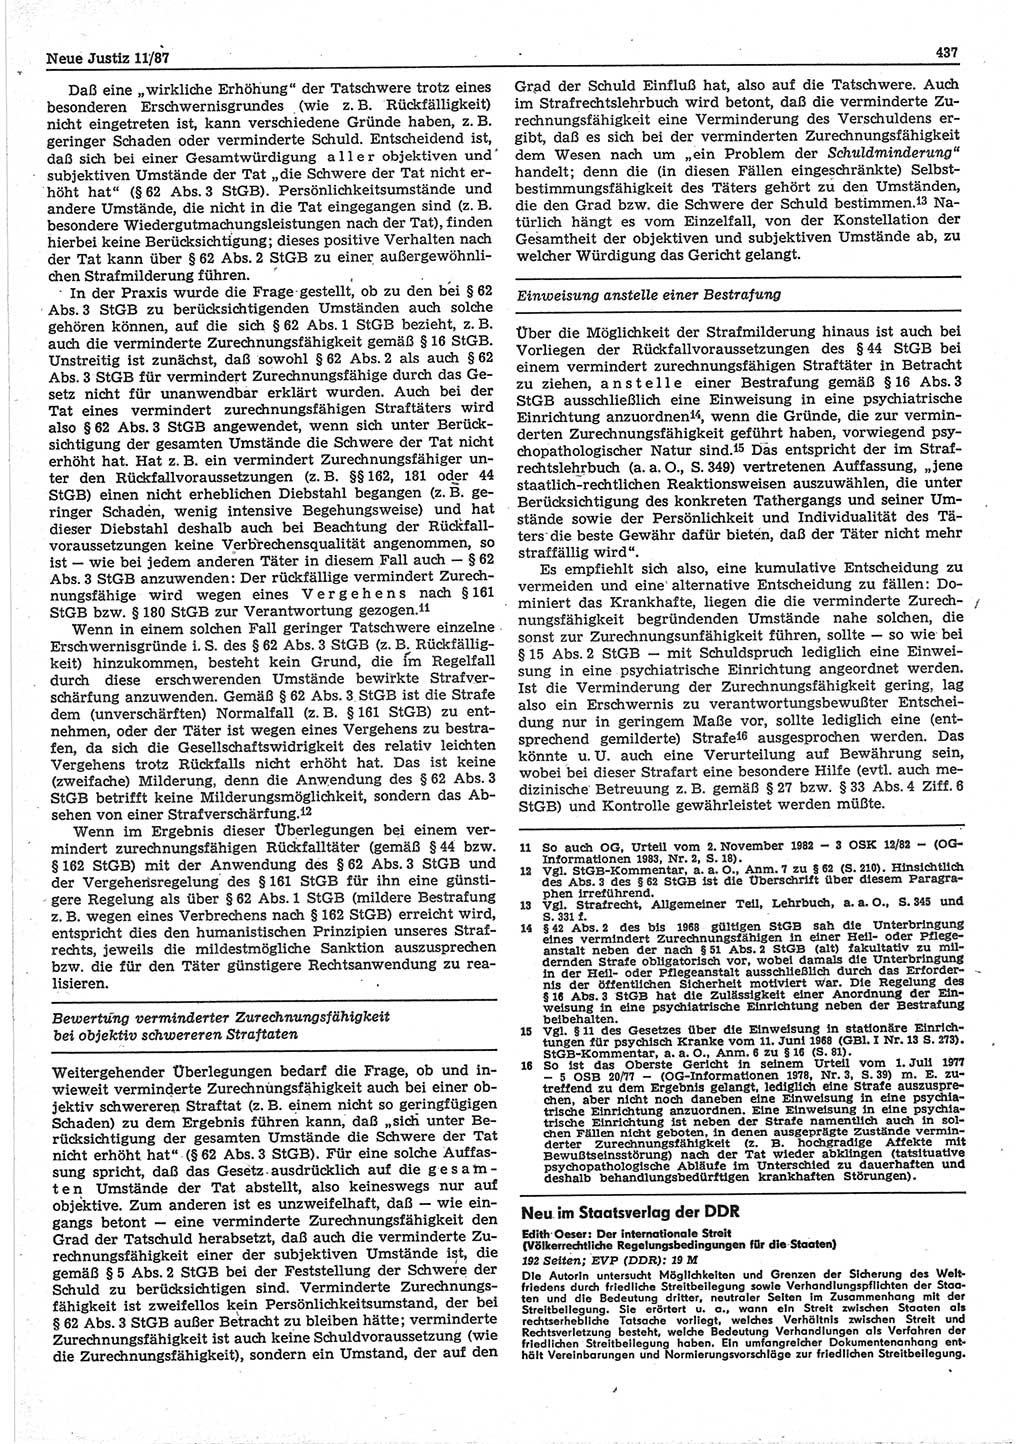 Neue Justiz (NJ), Zeitschrift für sozialistisches Recht und Gesetzlichkeit [Deutsche Demokratische Republik (DDR)], 41. Jahrgang 1987, Seite 437 (NJ DDR 1987, S. 437)